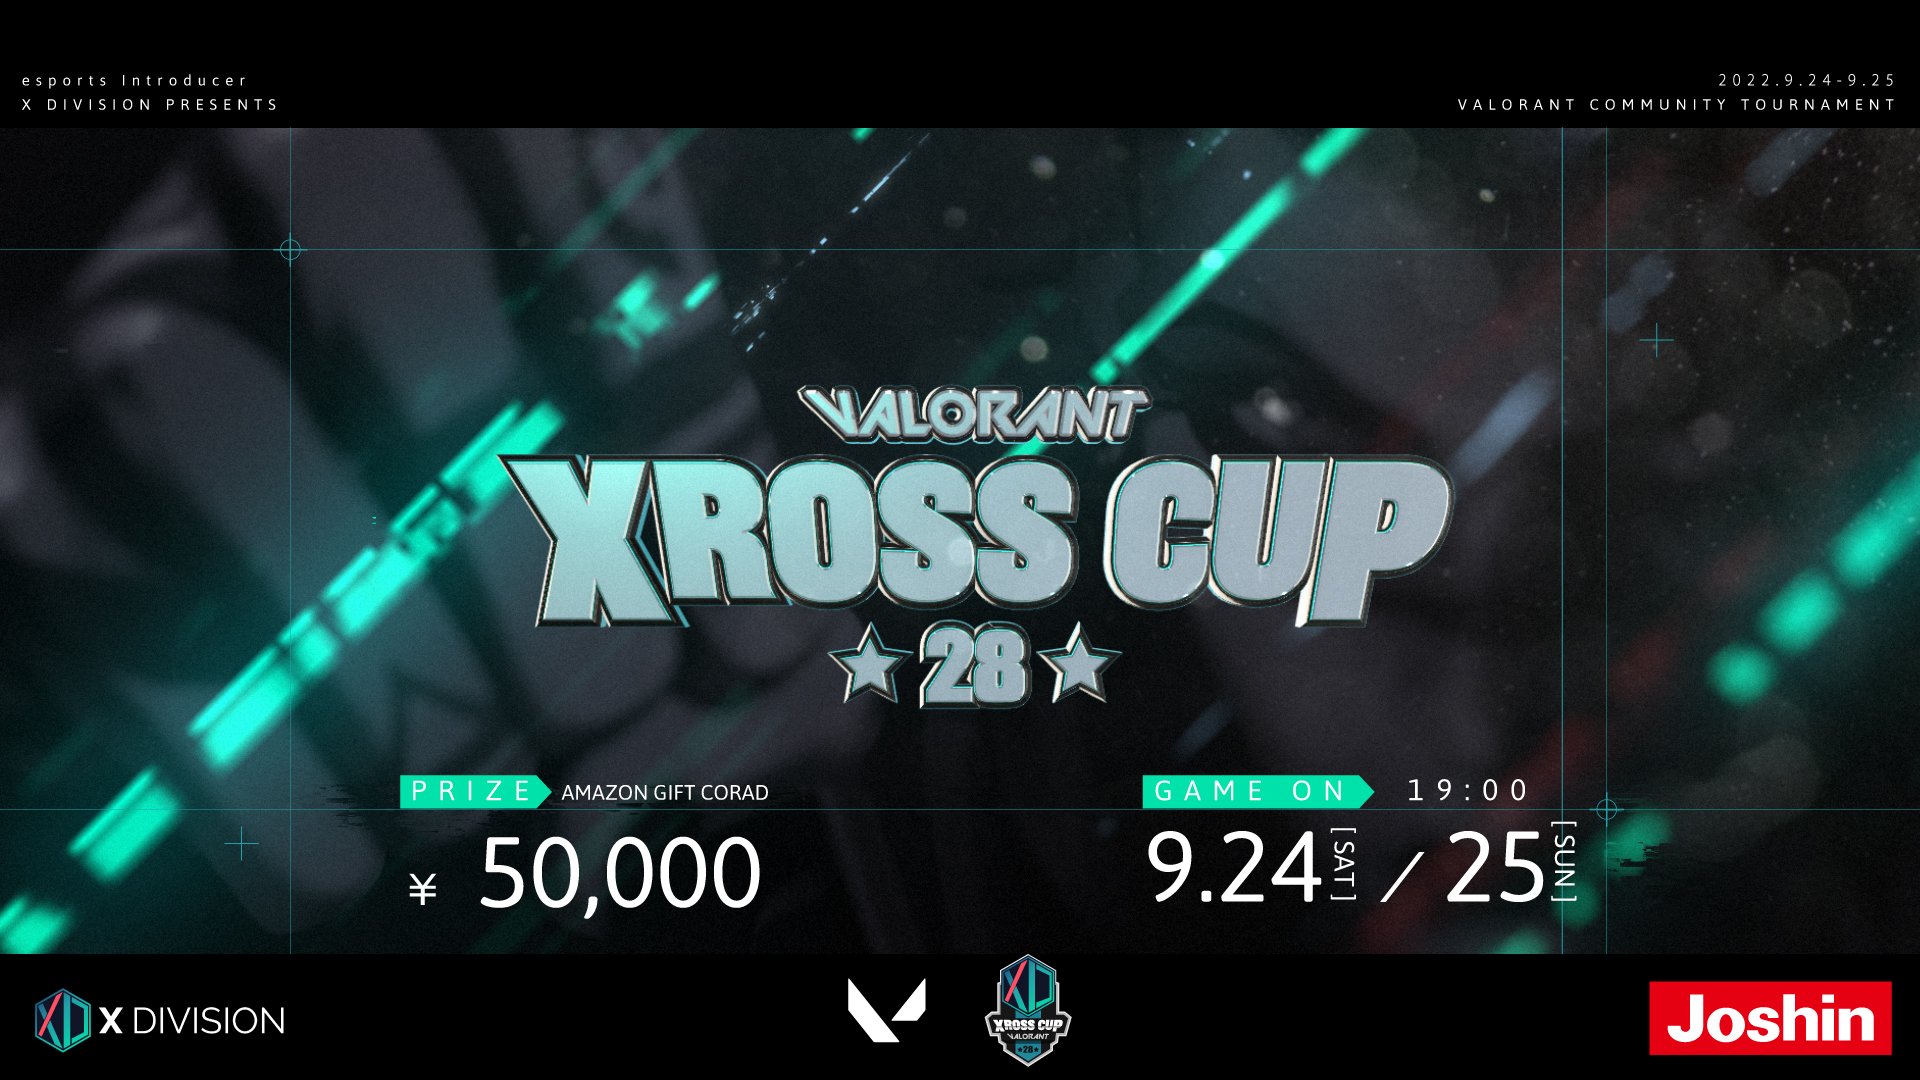 【大会情報】VALORANT Xross Cup 28【2022年9月24日、9月25日】